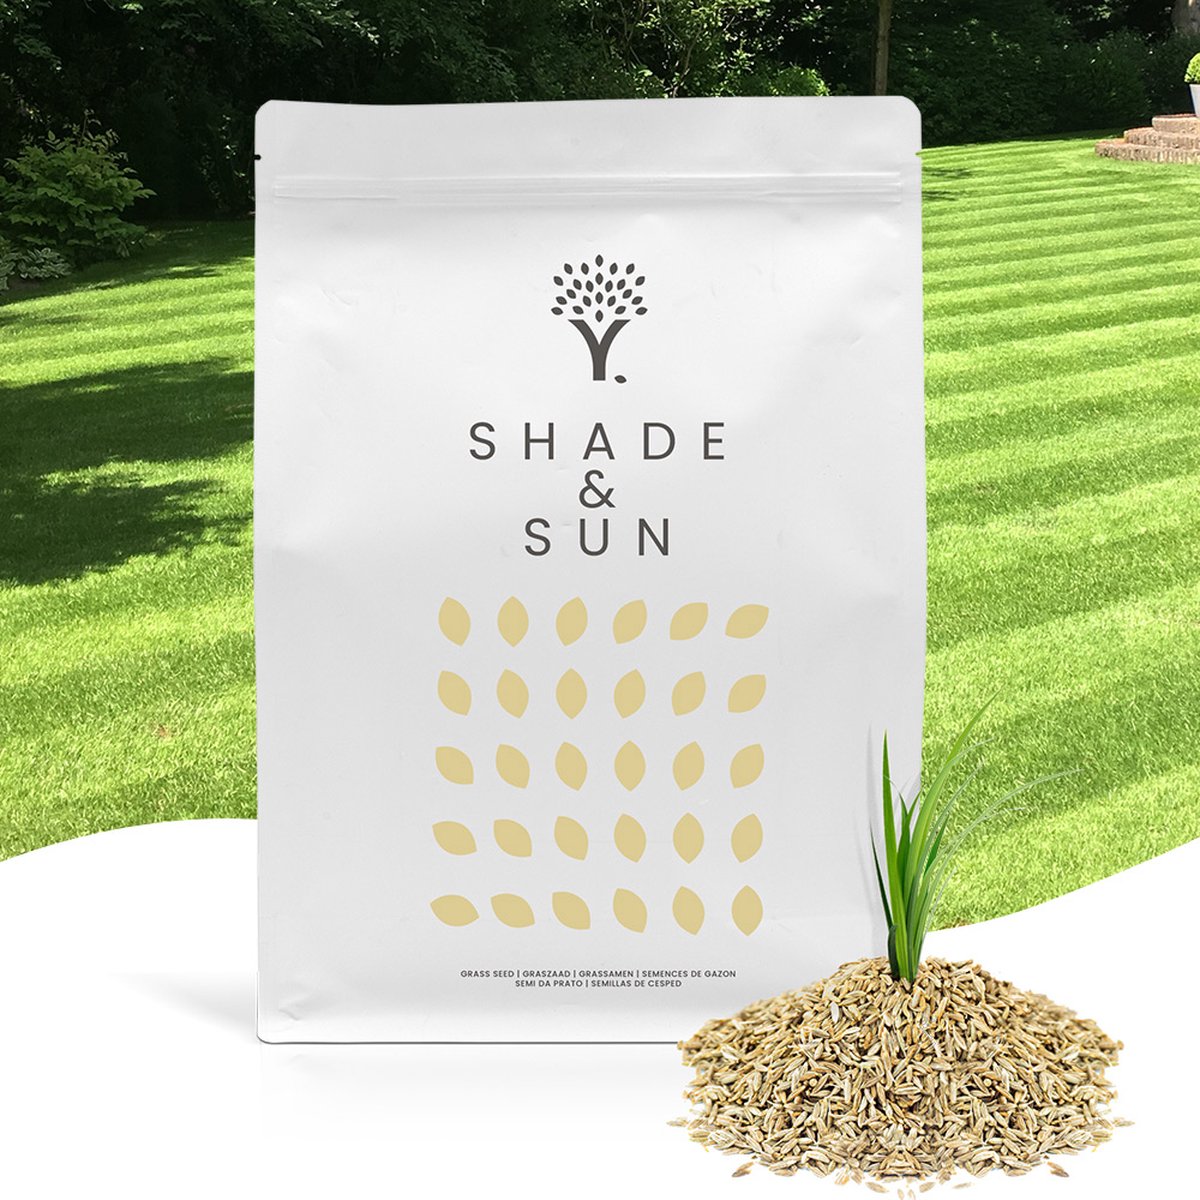 Schaduw Graszaad voor 100m² Gras - MOOWY Shade & Sun Voor een Gazon met Veel Schaduw - Hitte & Droogte Resistent - Moowy